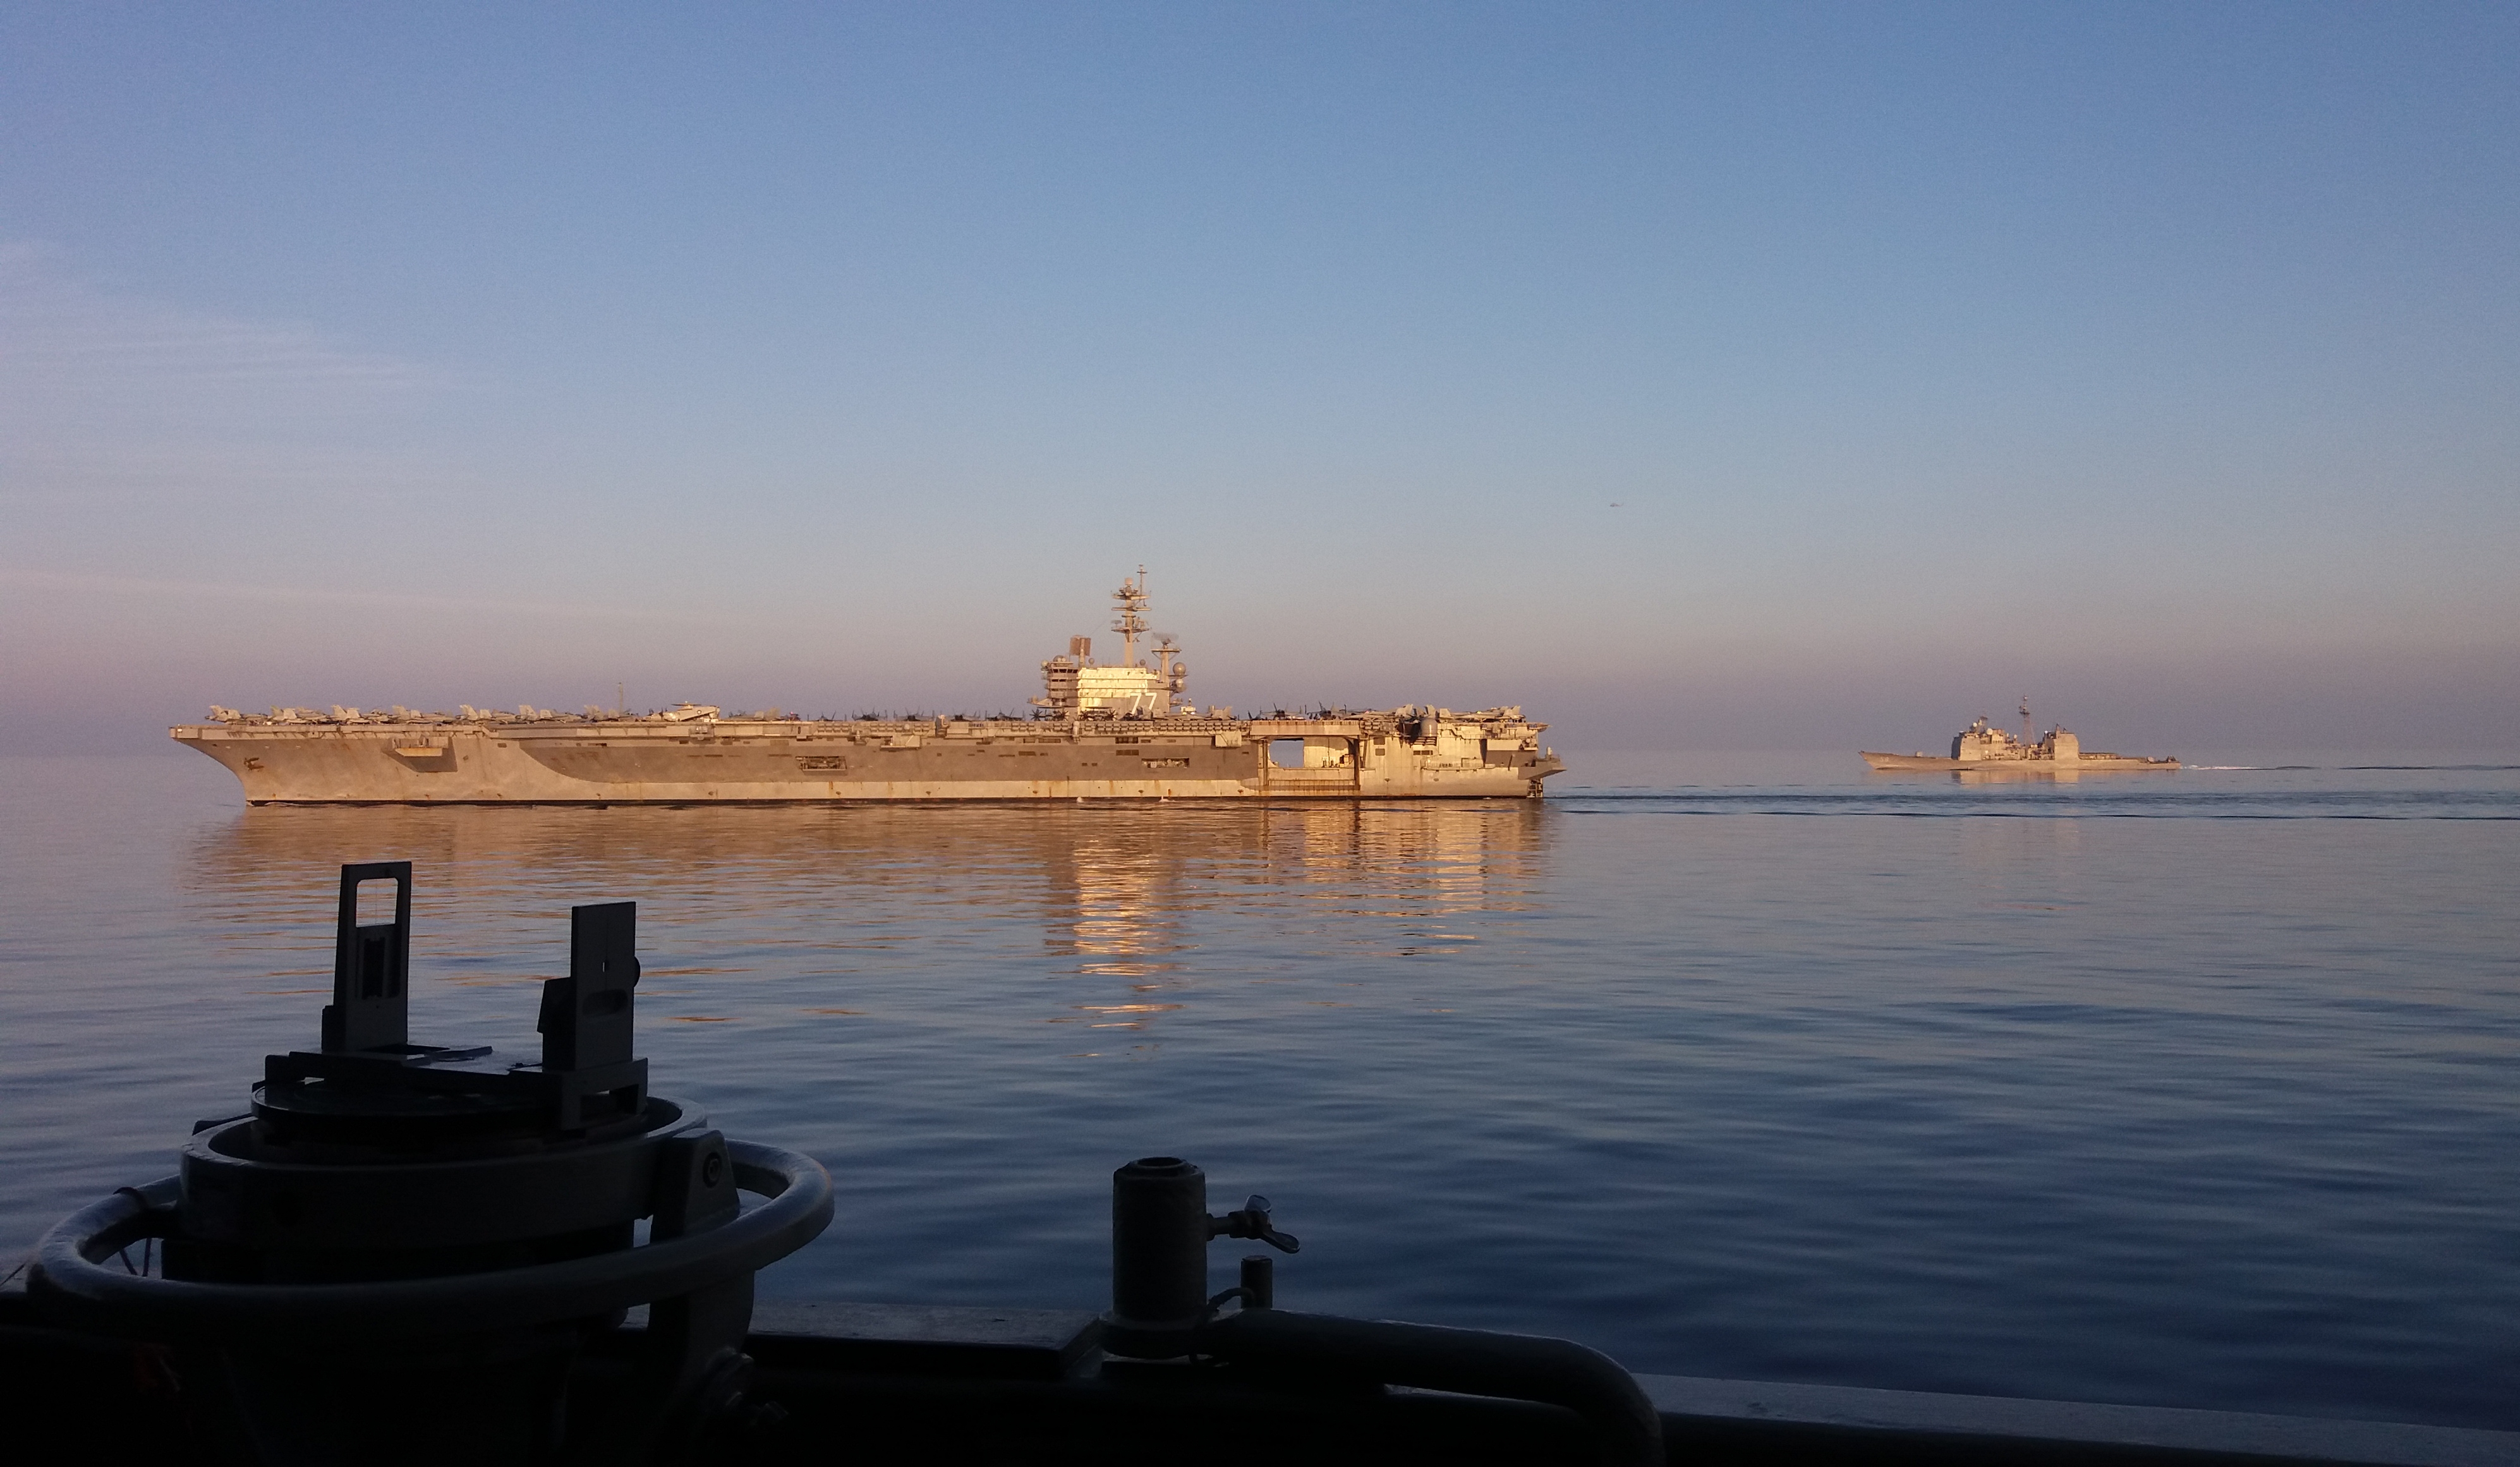 Συνεκπαίδευση του Πολεμικού Ναυτικού στο Κρητικό πέλαγος με τον “Εκδικητή”